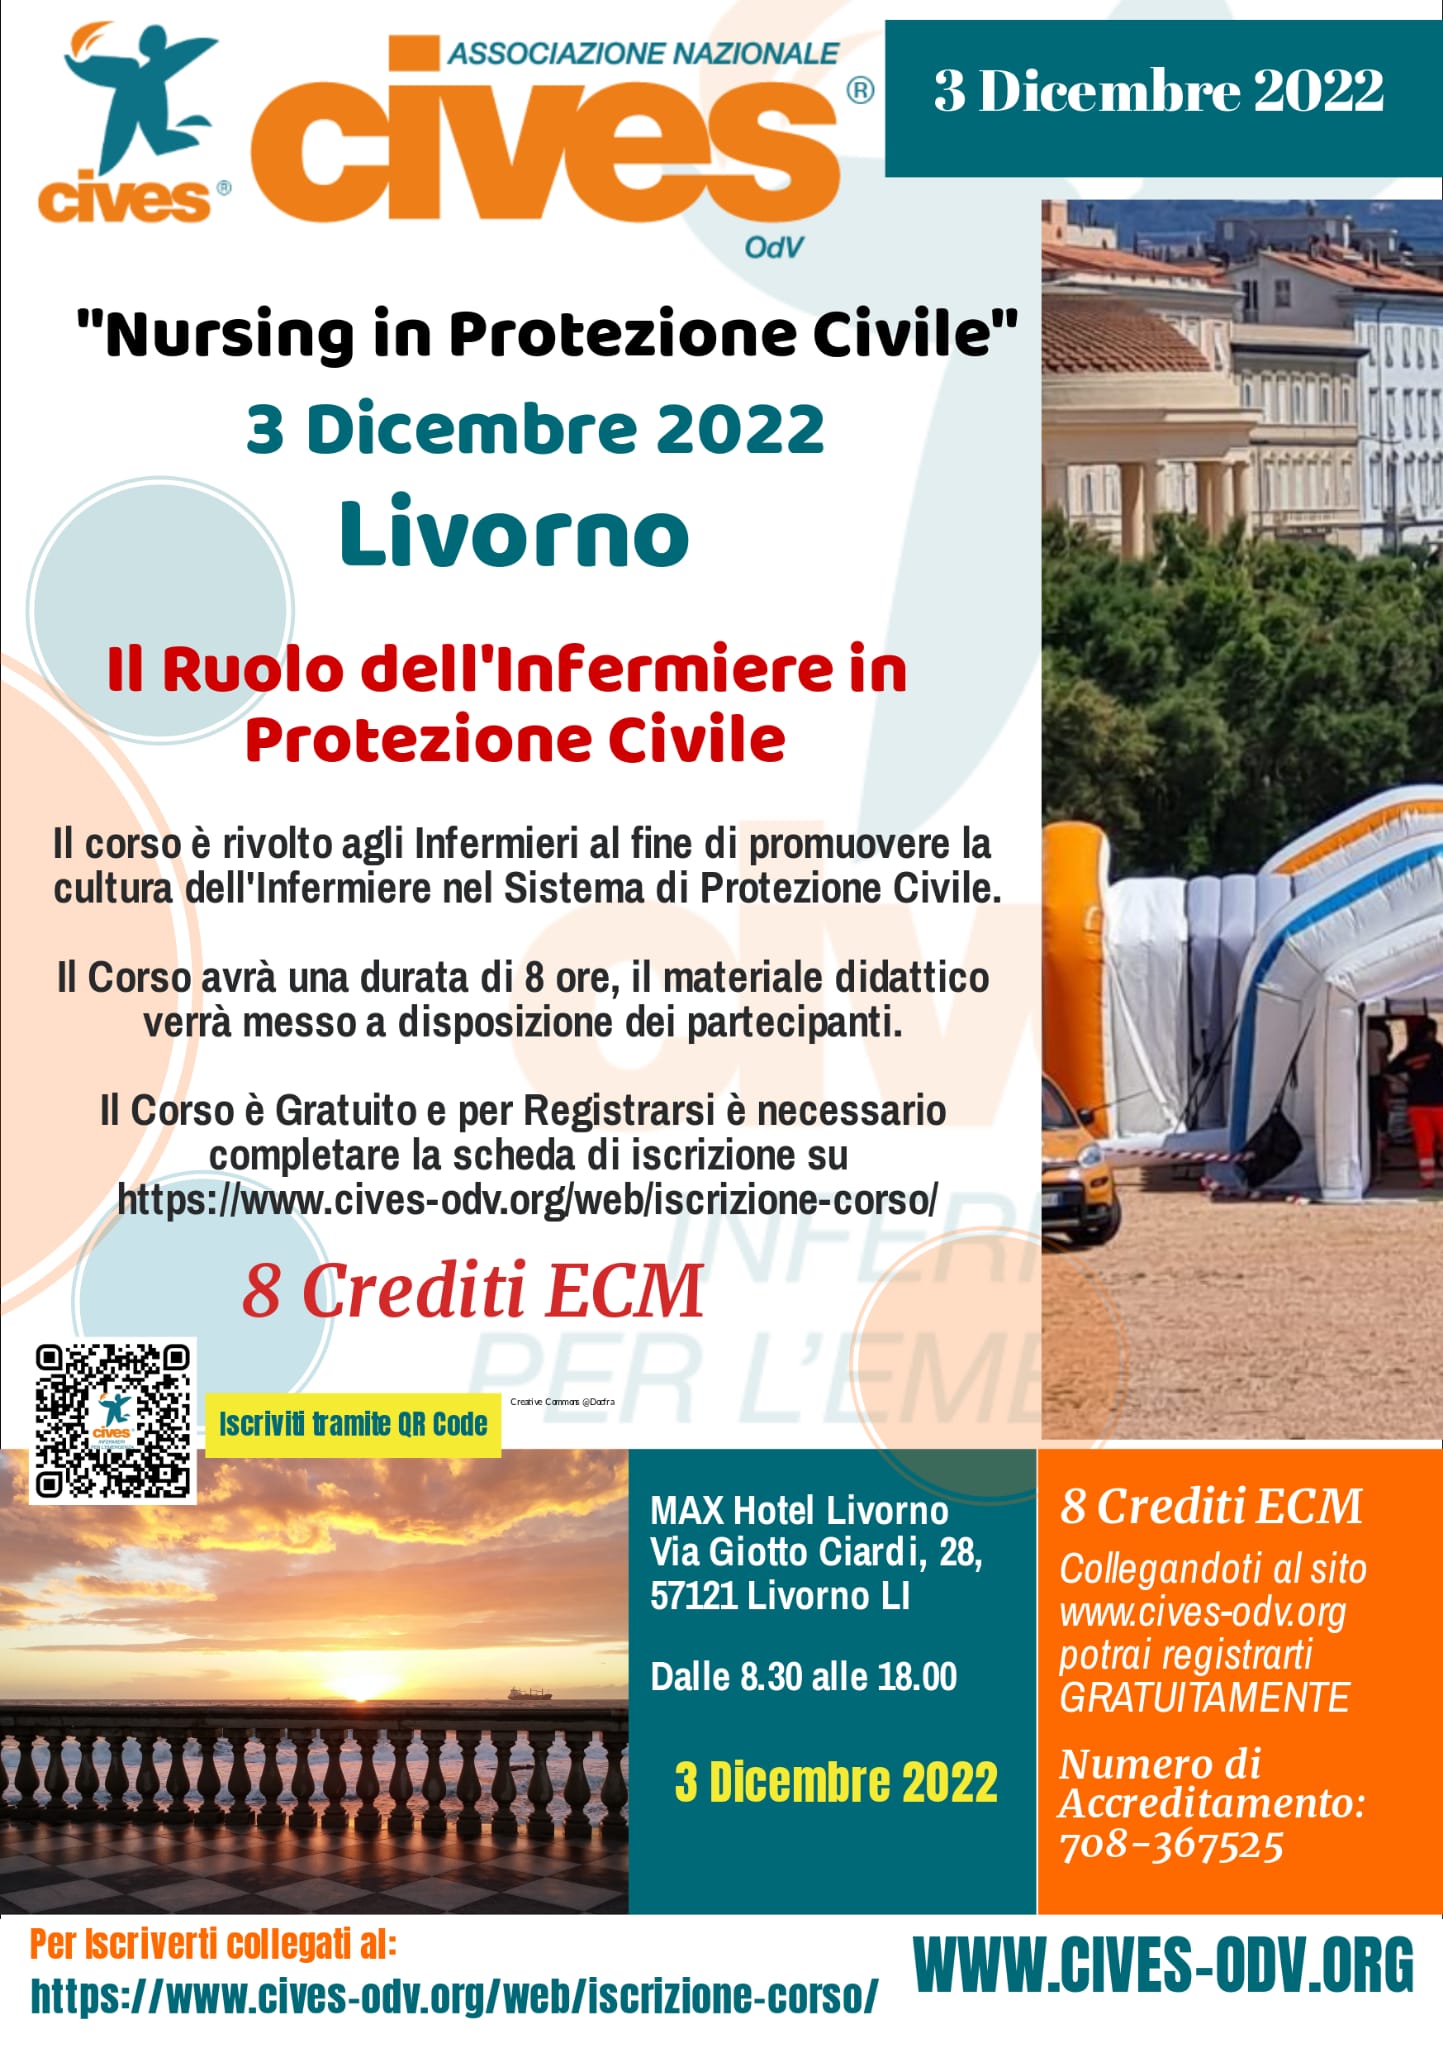 CIVES LIVORNO: Nursing in Protezione Civile il 3 Dicembre 2022